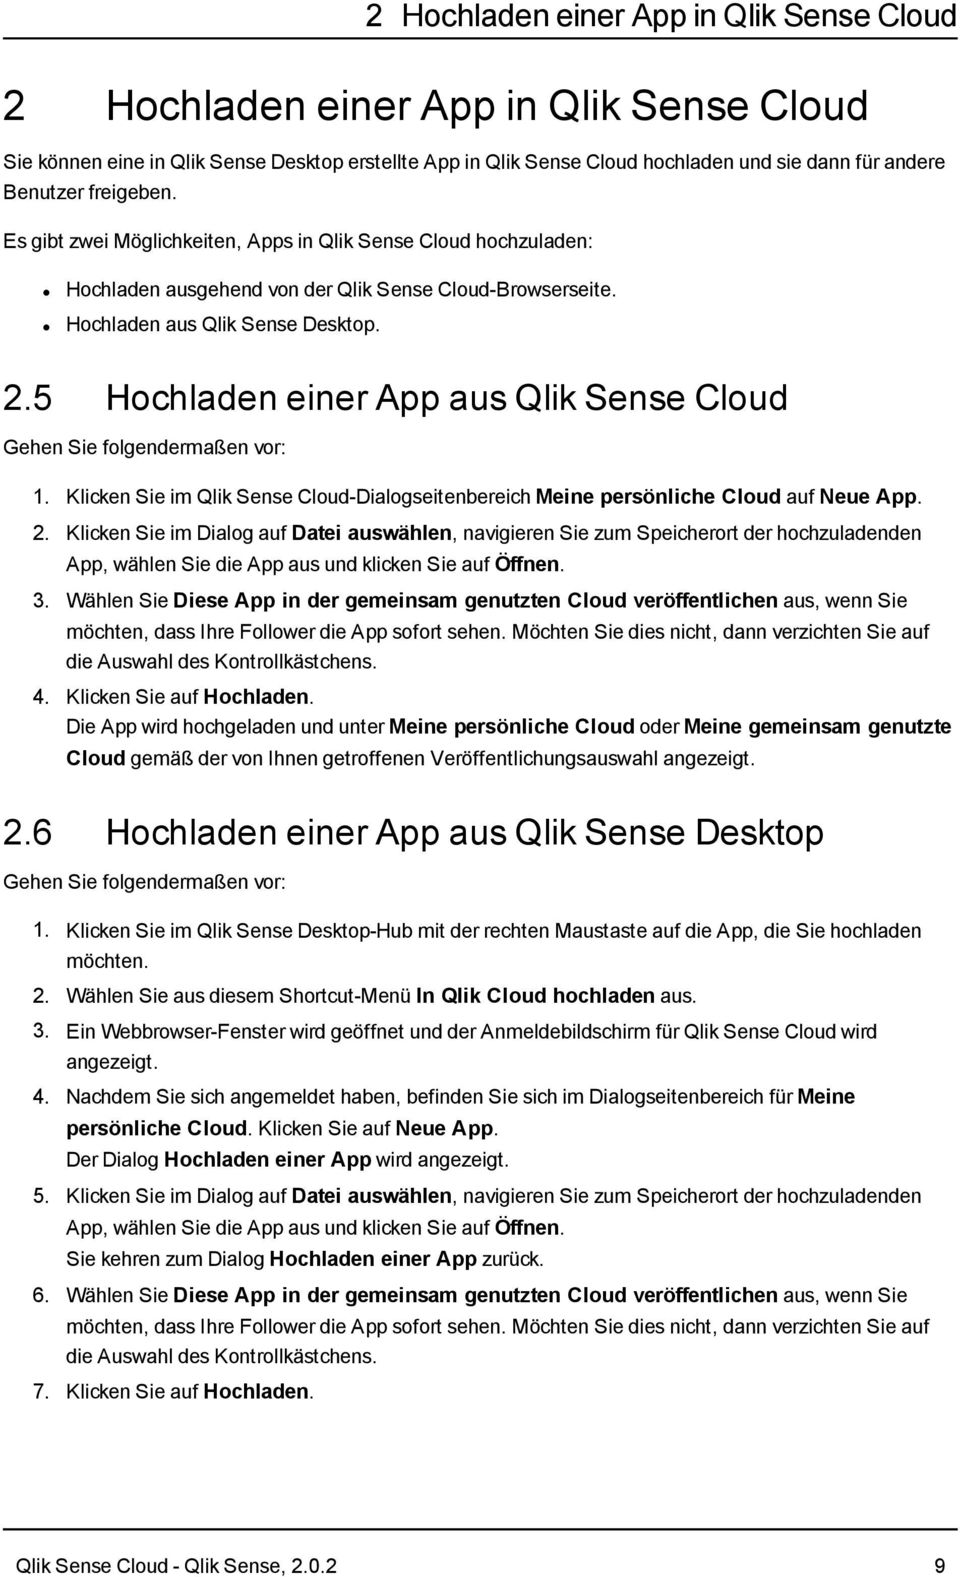 5 Hochladen einer App aus Qlik Sense Cloud 1. Klicken Sie im Qlik Sense Cloud-Dialogseitenbereich Meine persönliche Cloud auf Neue App. 2.